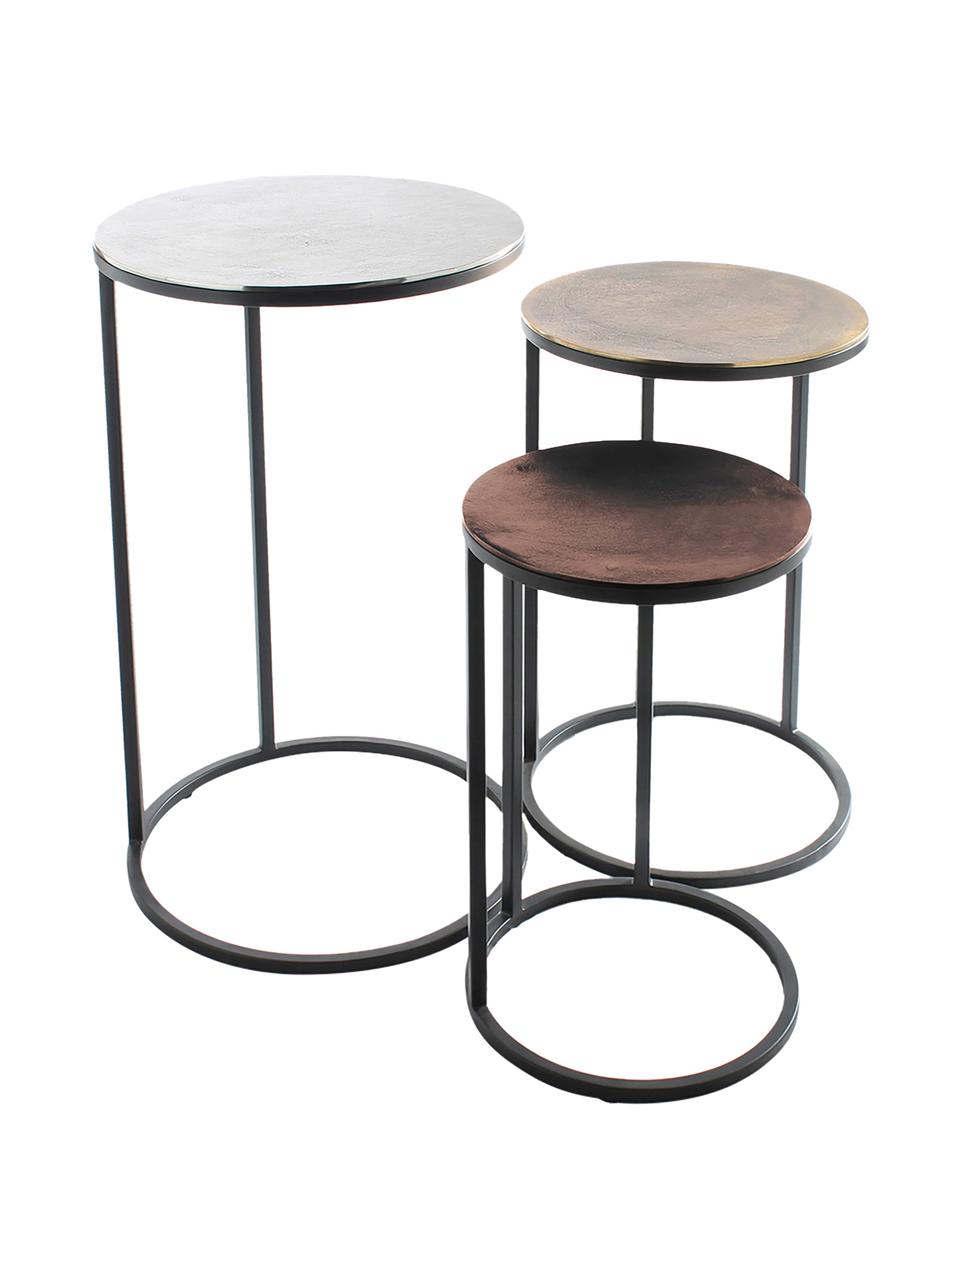 Komplet stolików pomocniczych Calvin, 3 elem., Blat: aluminium powlekane, Stelaż: metal lakierowany, Srebrny, mosiądz, miedziany, Komplet z różnymi rozmiarami